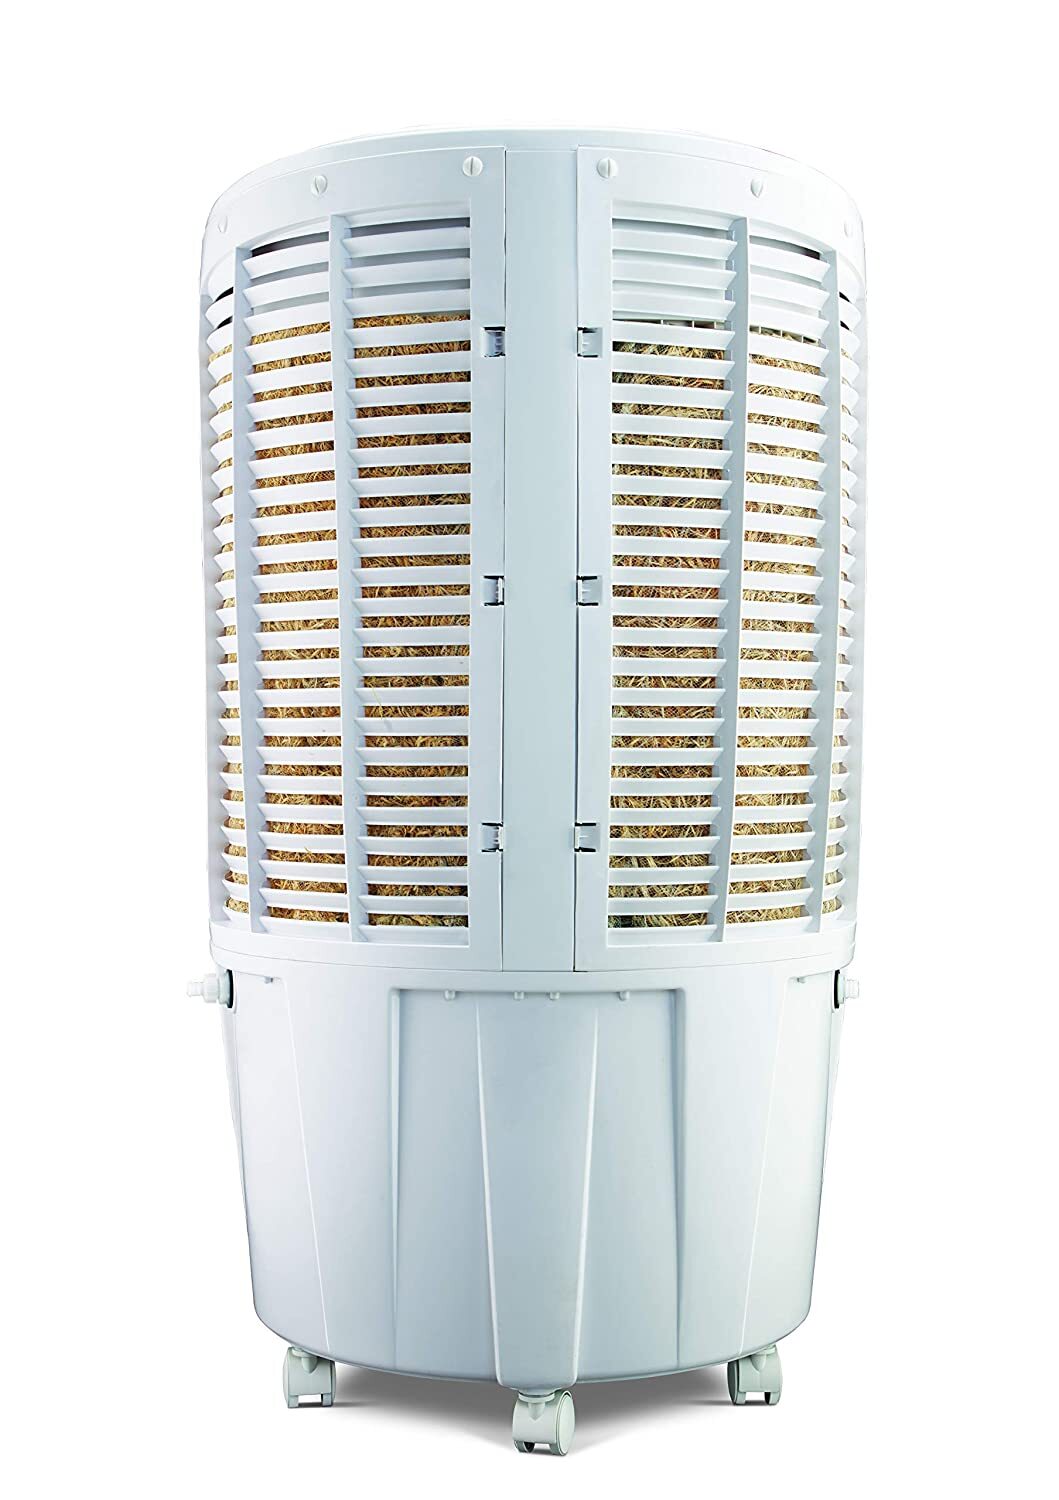 Bajaj DC2016 67-litres Desert Air Cooler (White) - for Large Room-M000000000470 www.mysocially.com